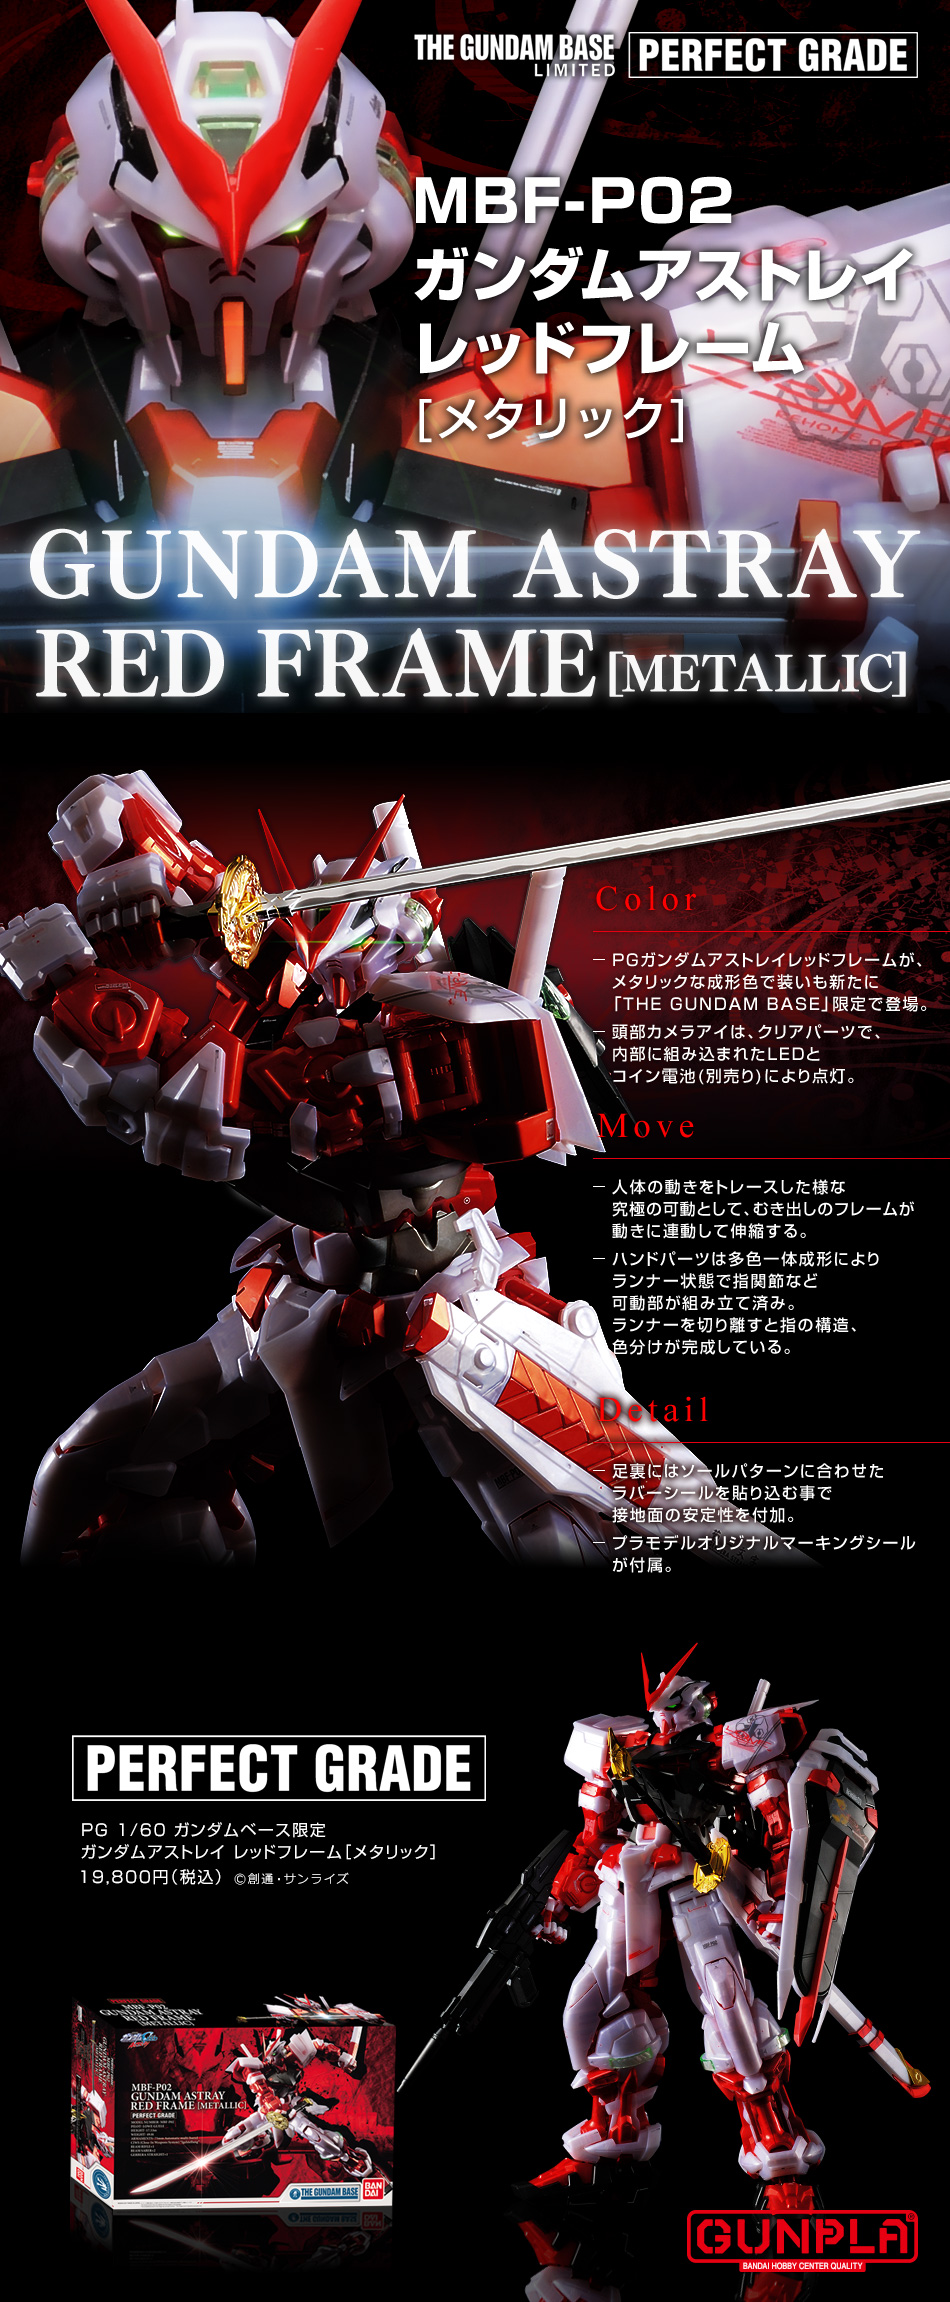 Pg 1 60 ガンダムベース限定 ガンダムアストレイ レッドフレーム メタリック 商品情報 The Gundam Base ガンダム ベース公式サイト